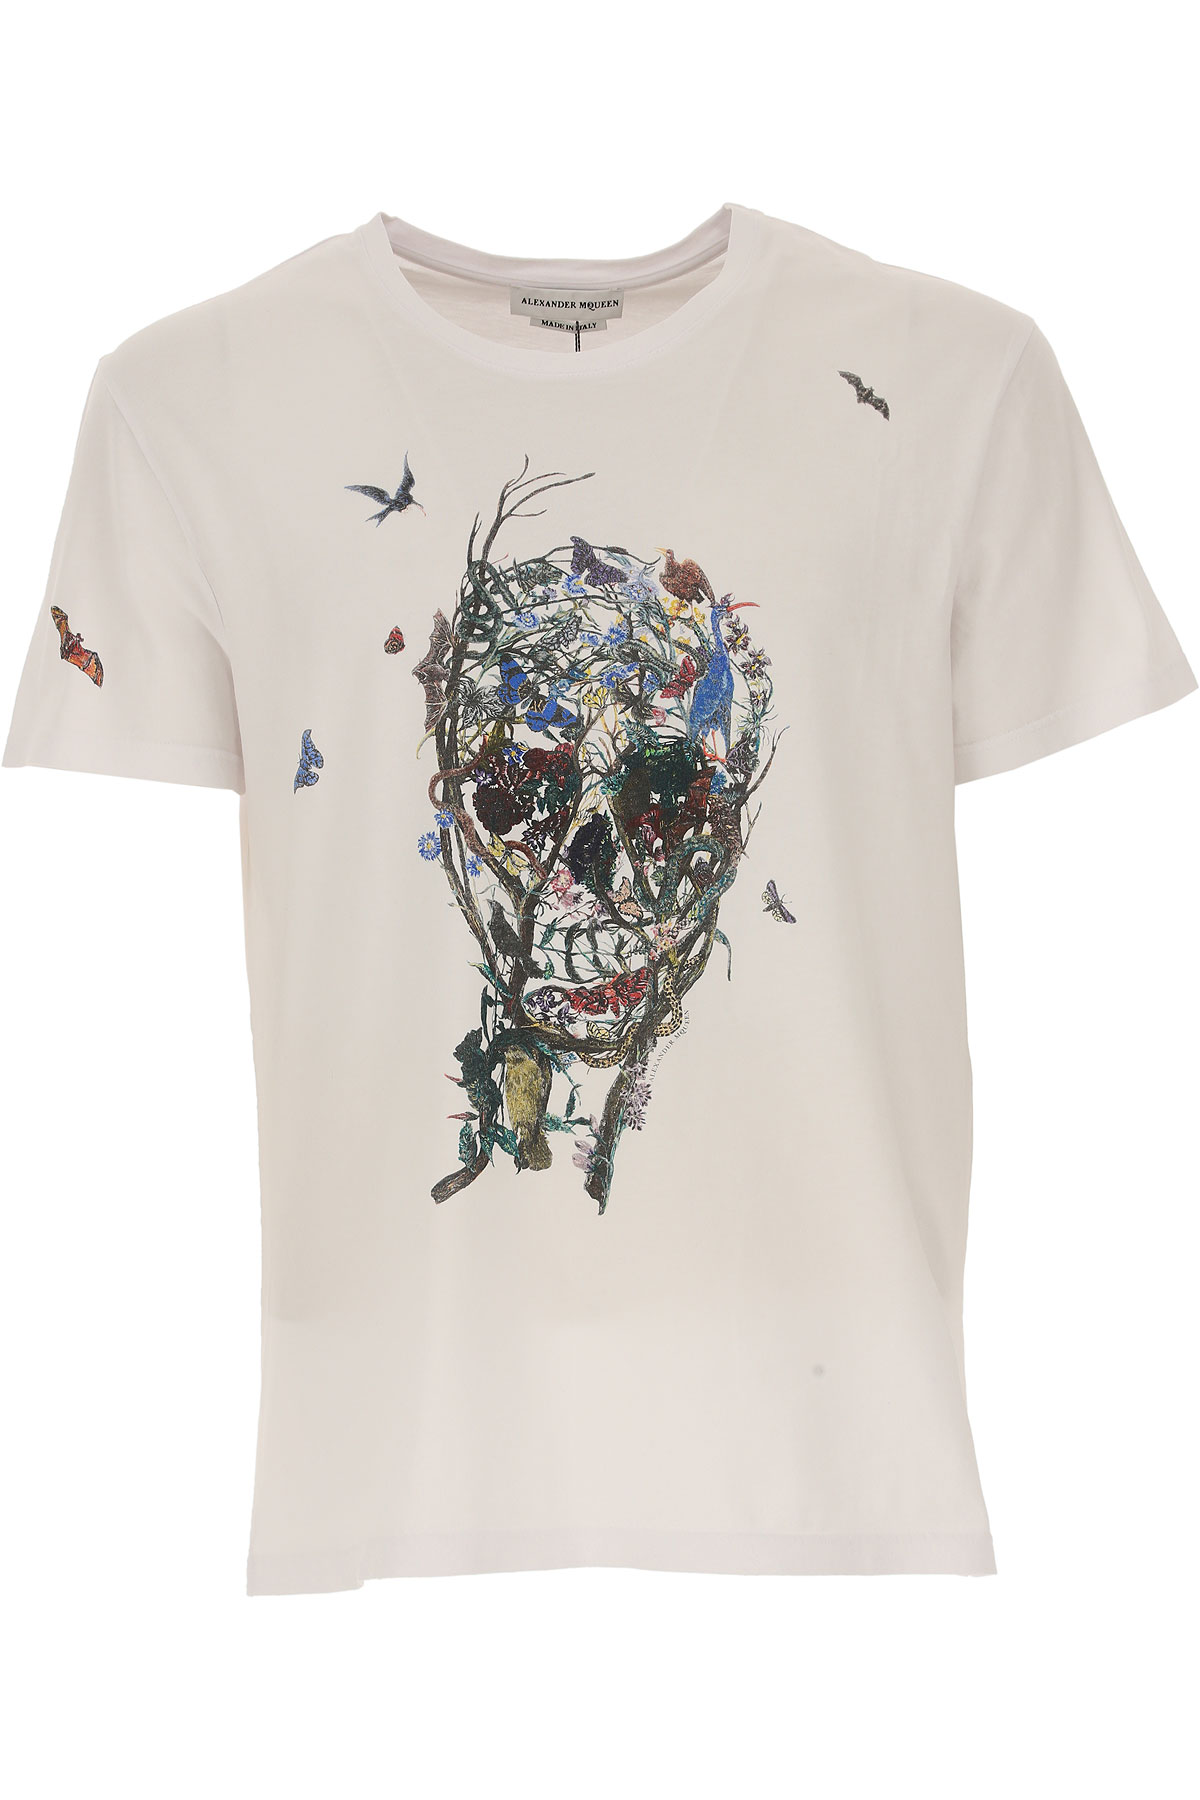 Alexander McQueen T-shirt Homme, Blanc, Coton, 2017, L M S XL XS